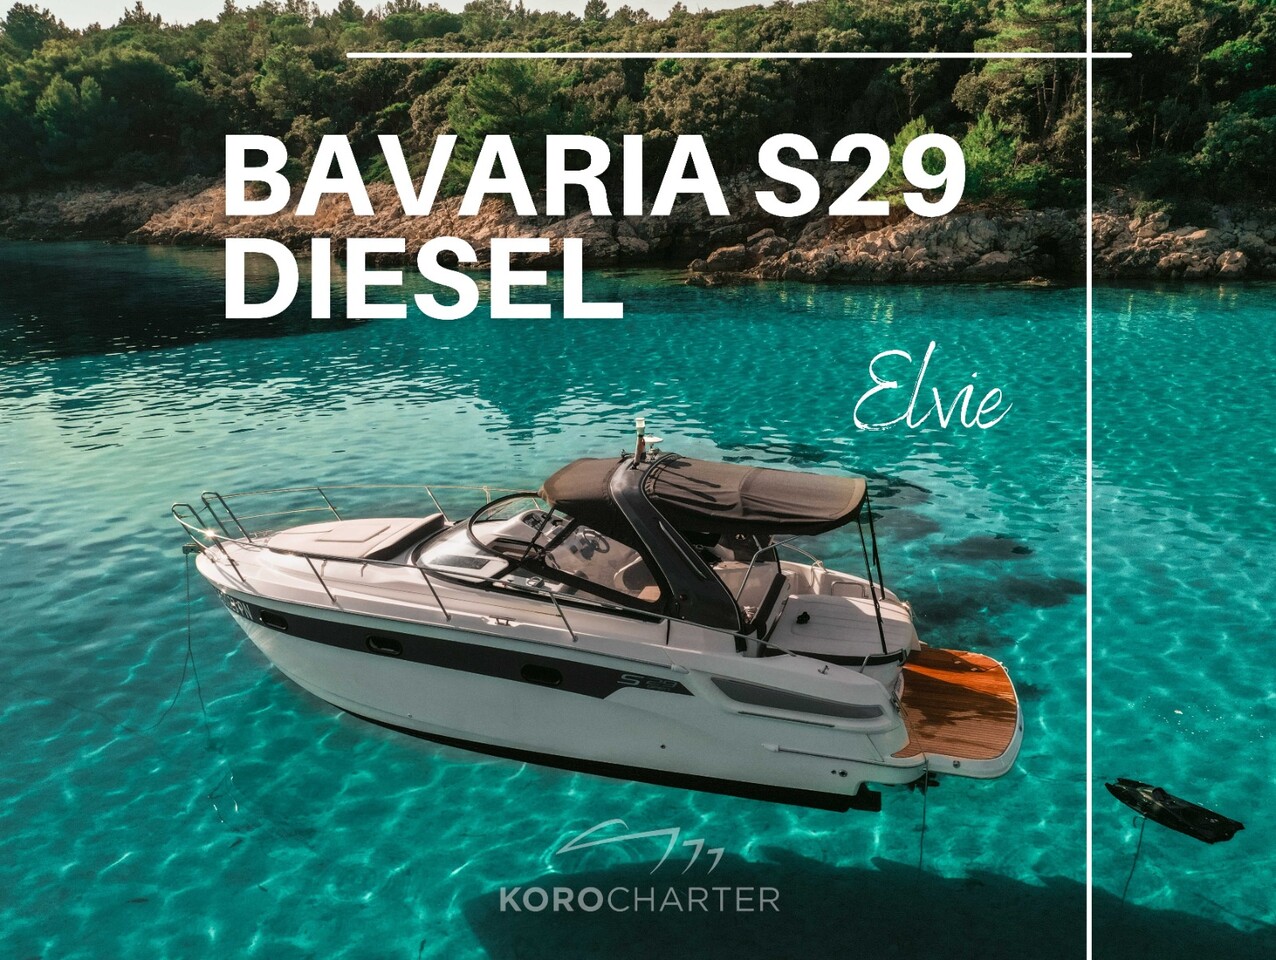 Bavaria S 29 Diesel